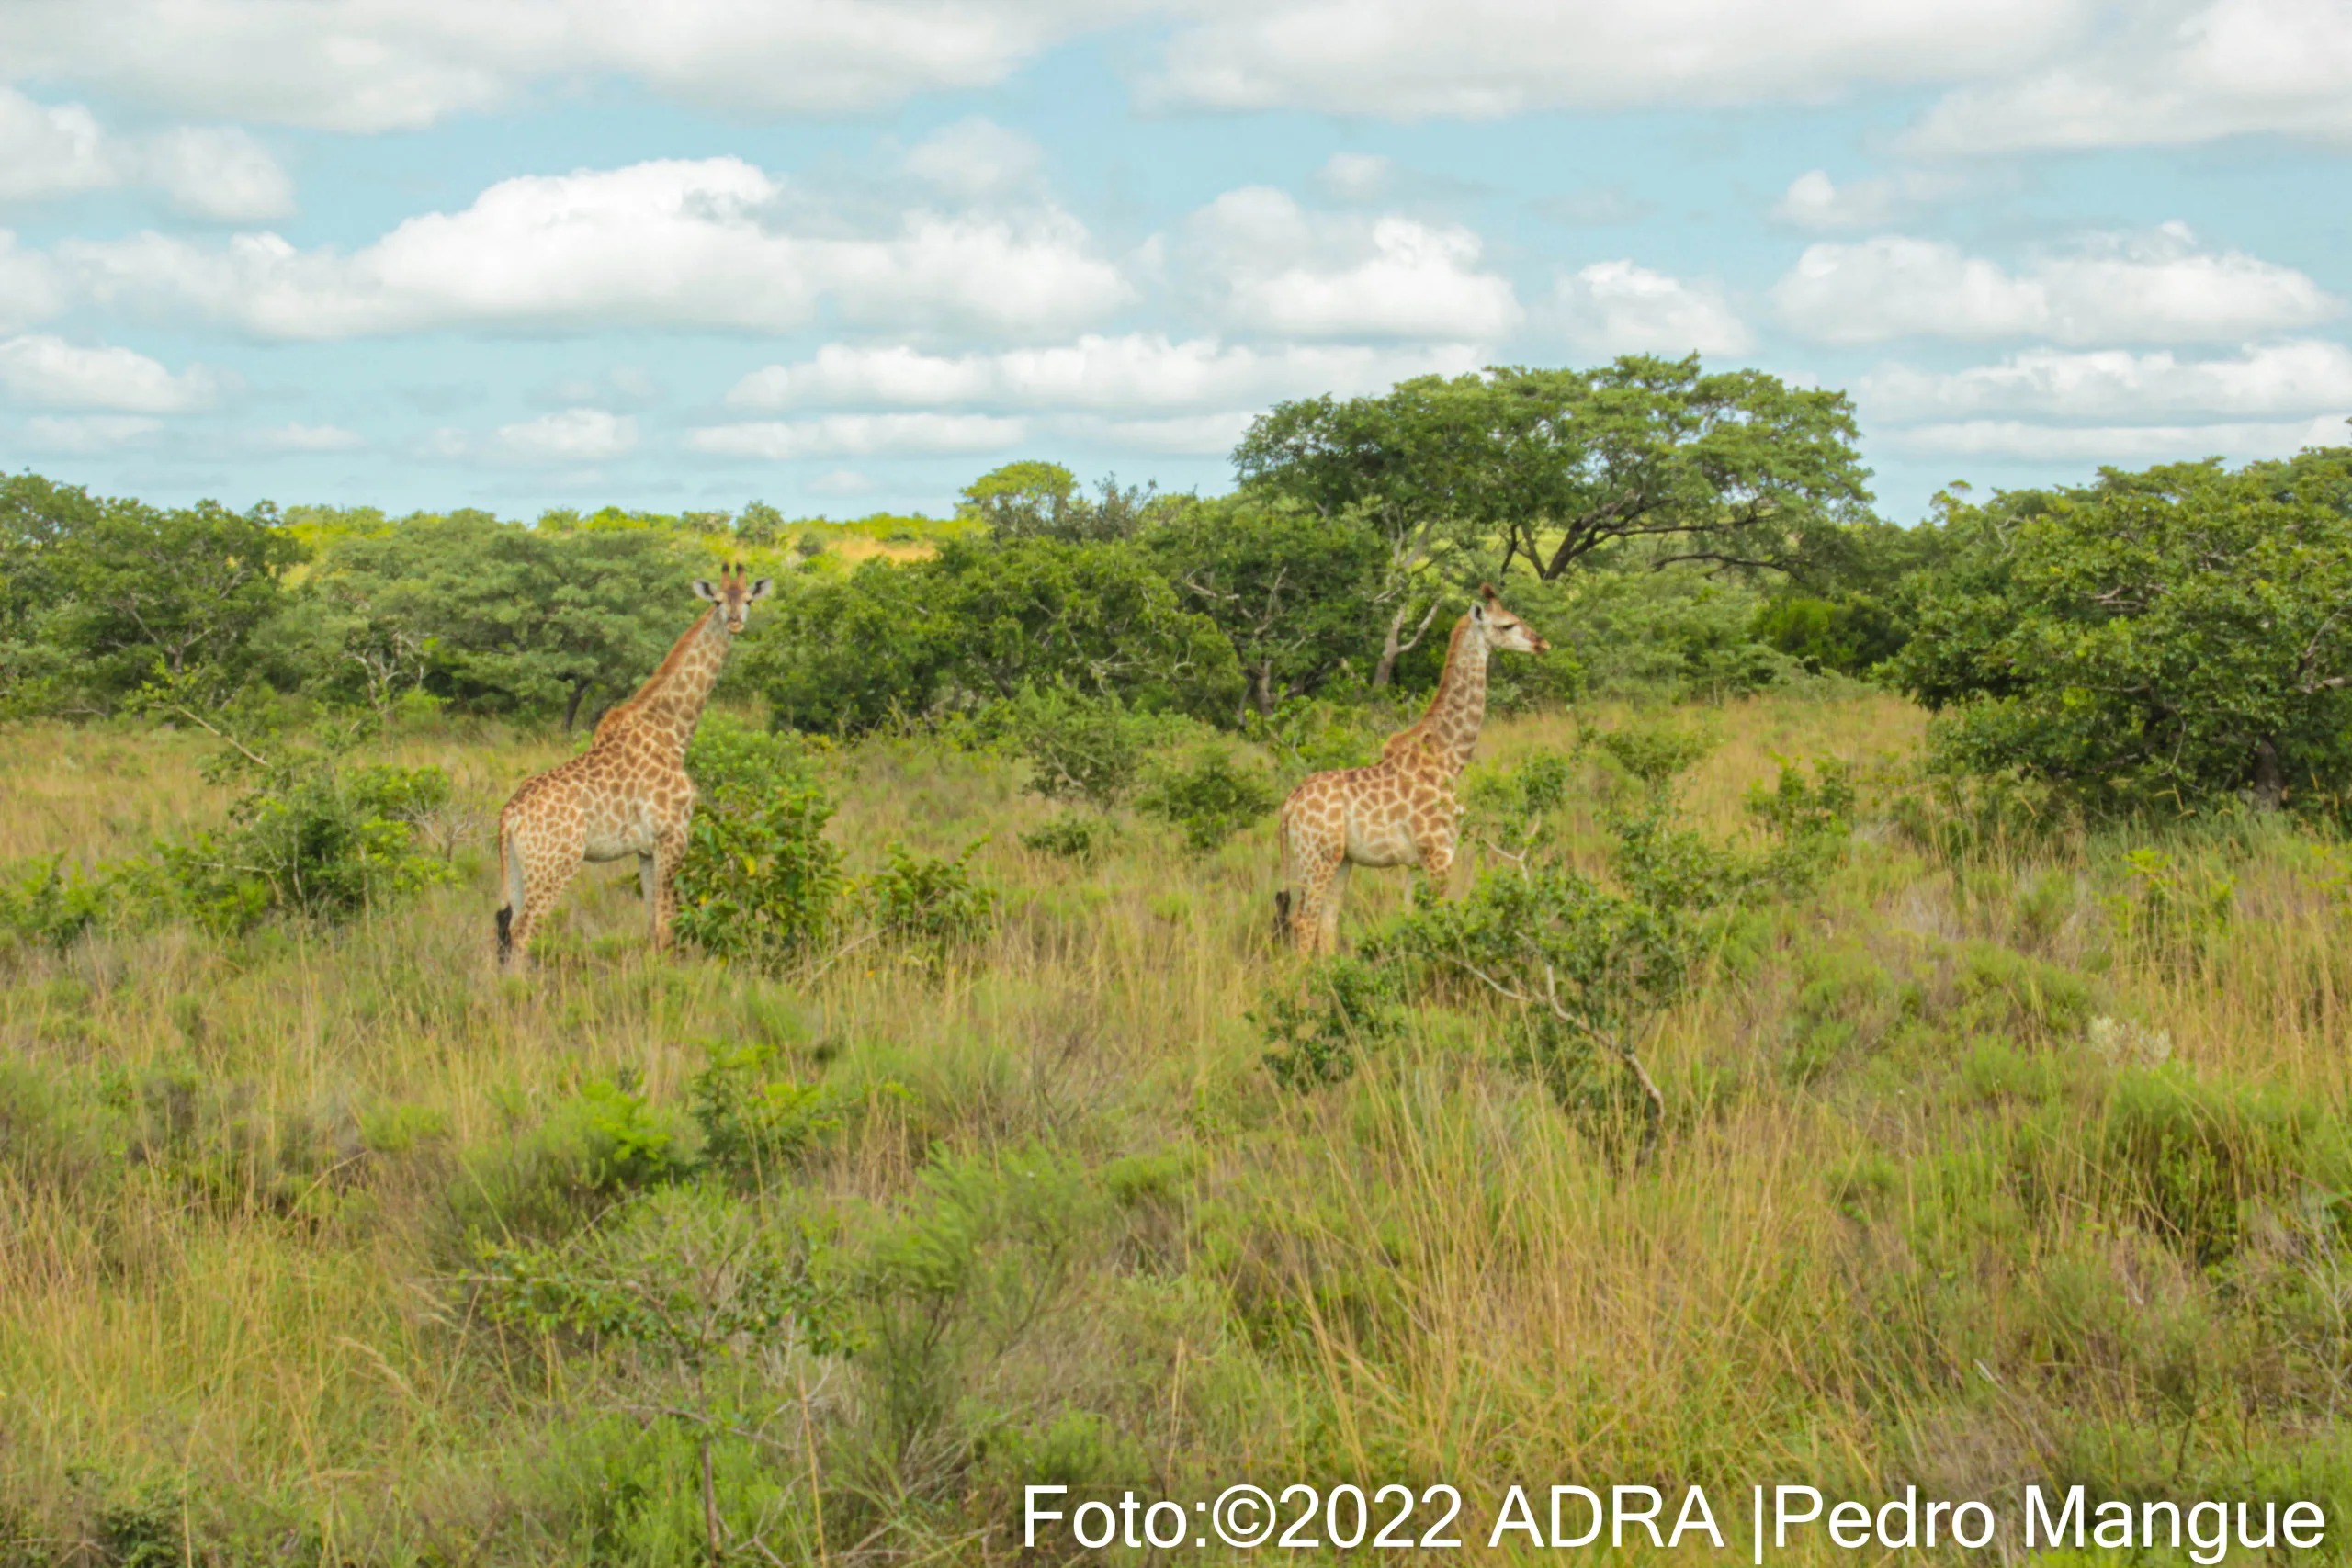 Zwei majestätische Giraffen stehen auf einer grünen Wiese in Mosambik